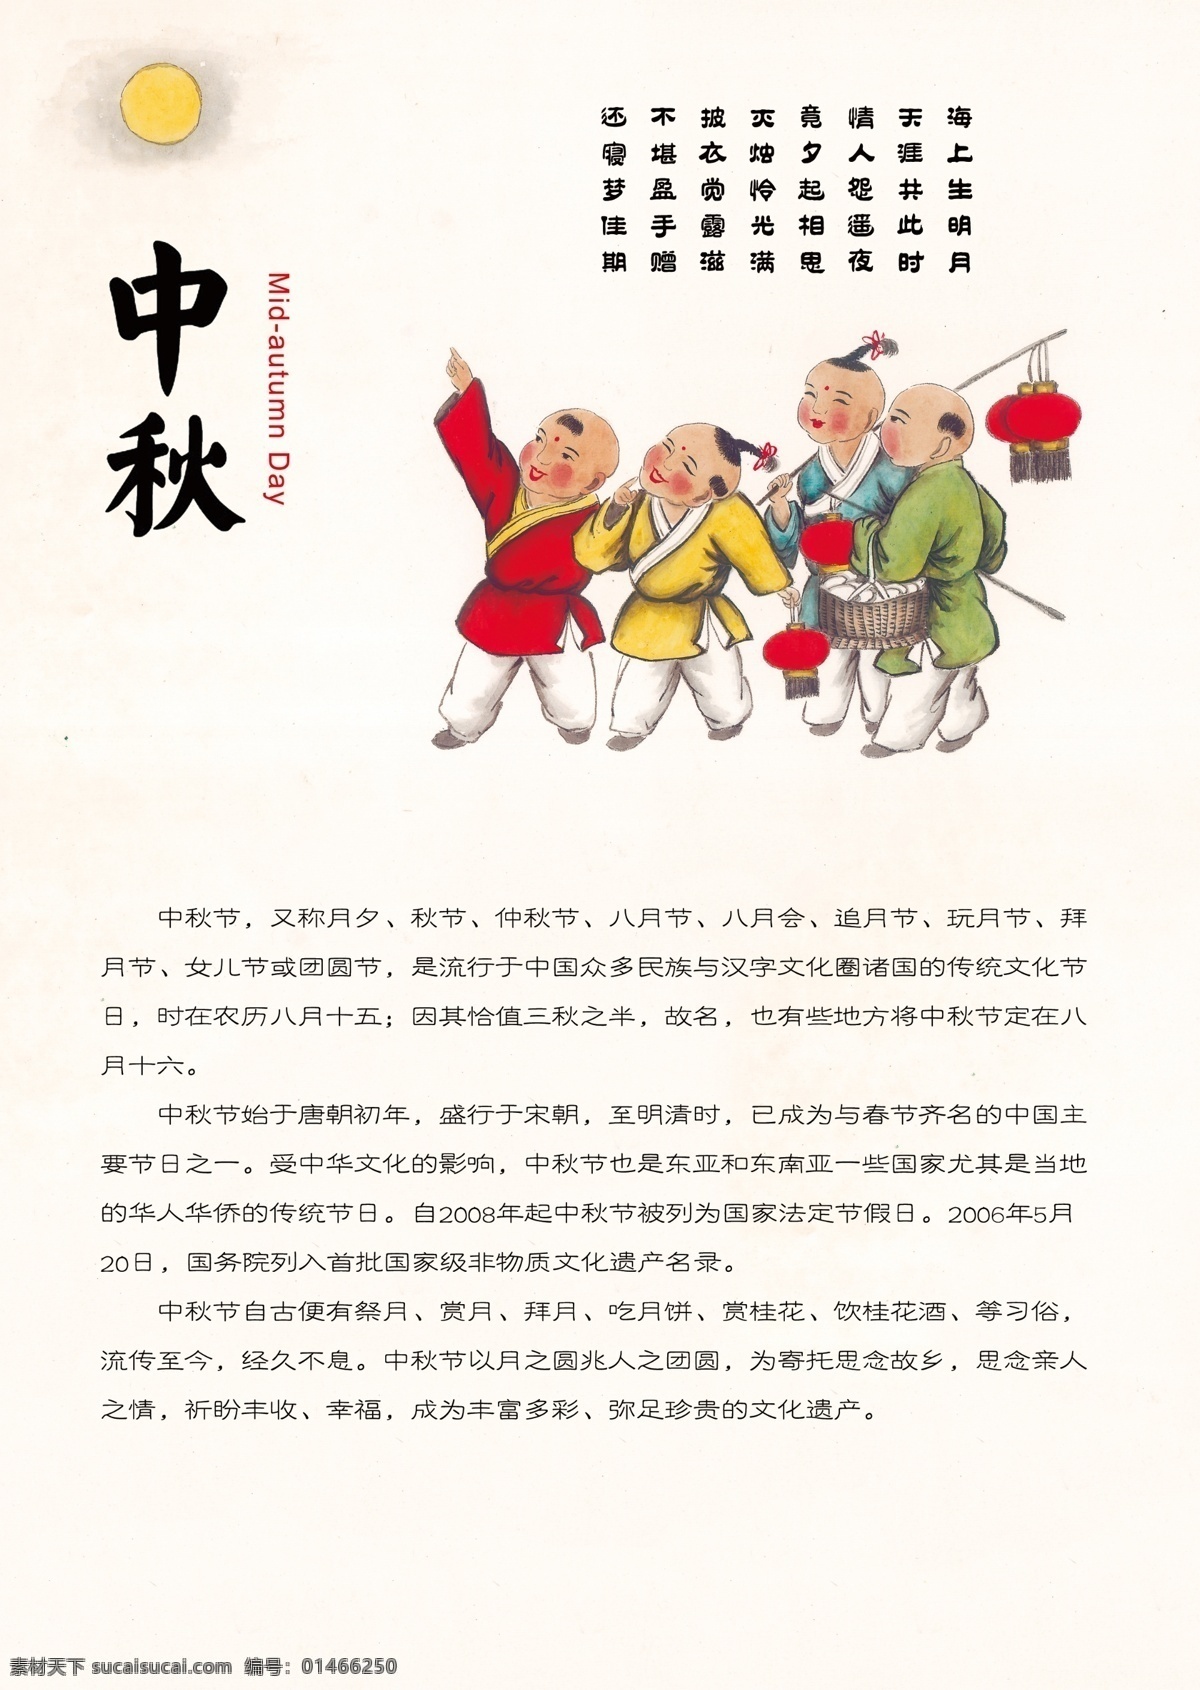 中秋小报 中秋节 传统文化 古代小孩 传统节日 中国节日